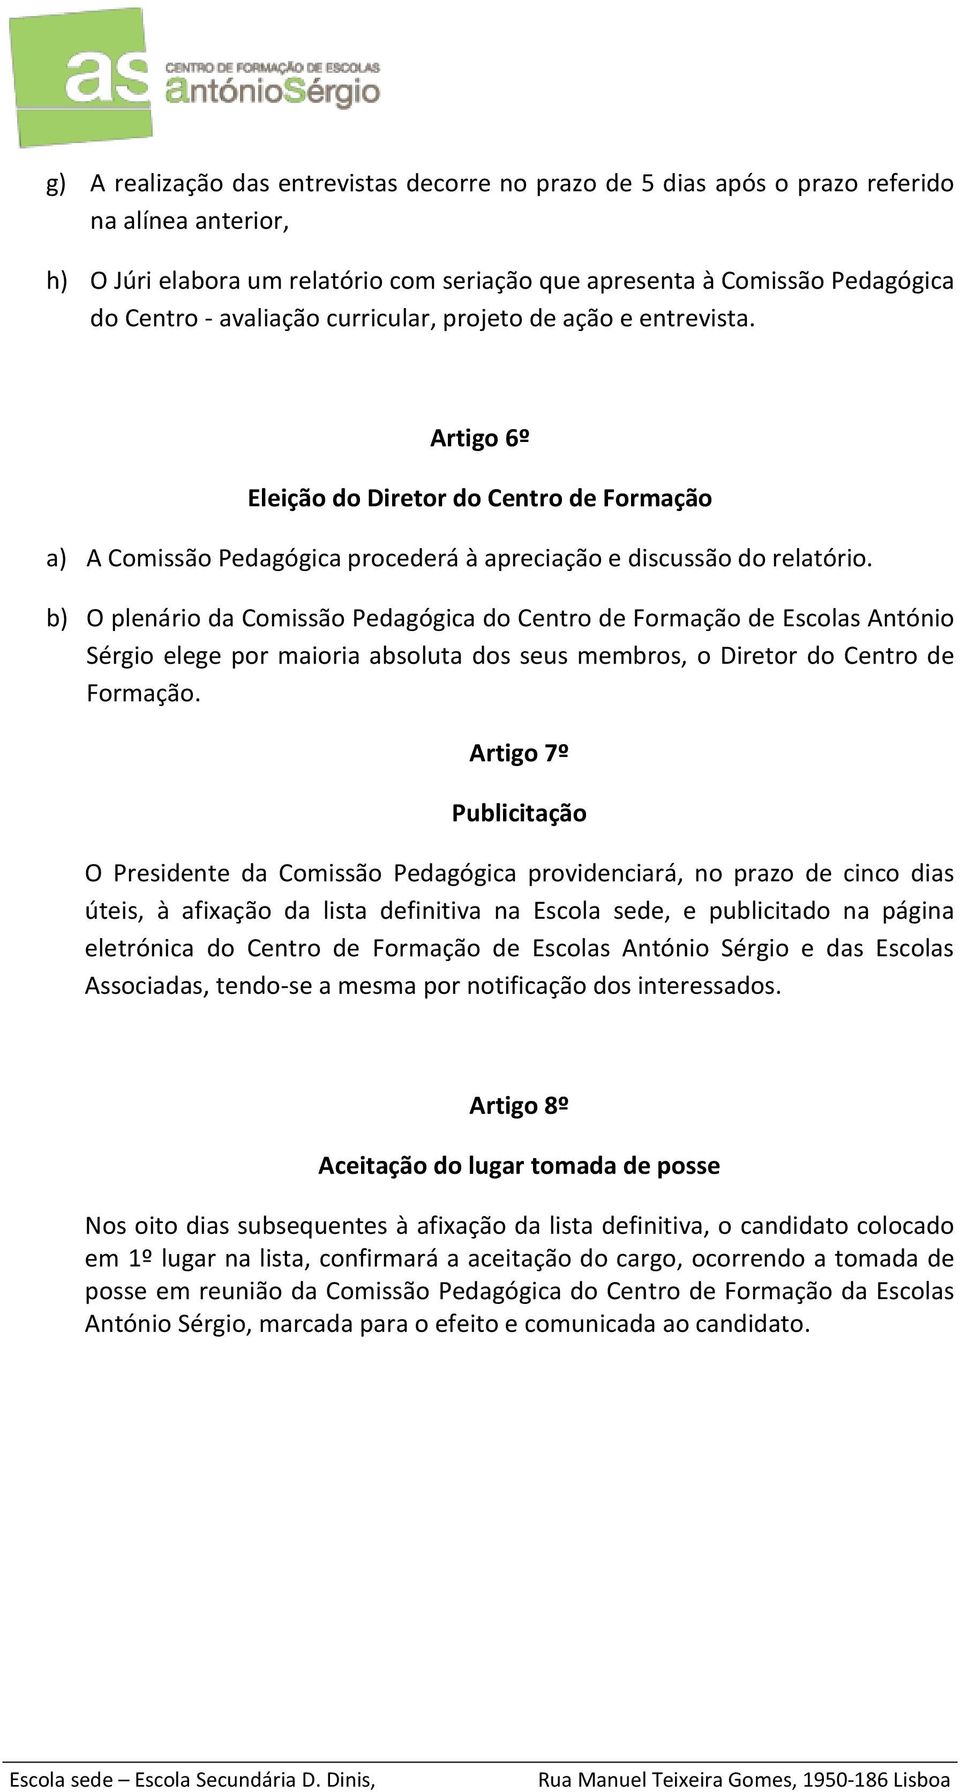 b) O plenário da Comissão Pedagógica do Centro de Formação de Escolas António Sérgio elege por maioria absoluta dos seus membros, o Diretor do Centro de Formação.